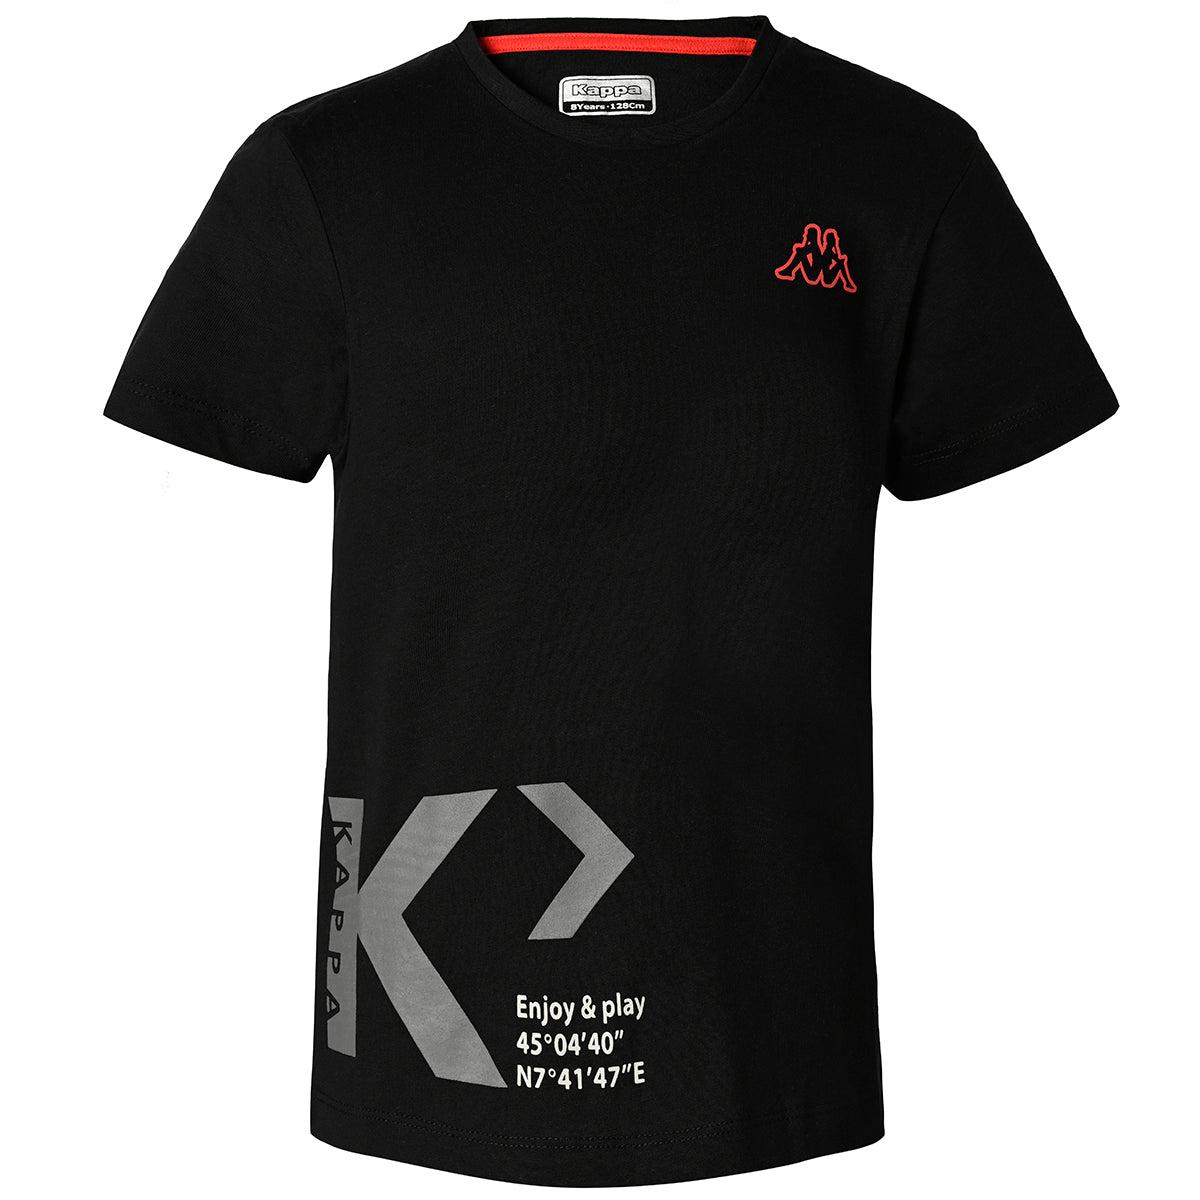 Selected image for KAPPA Majica za dečake Kepa crna